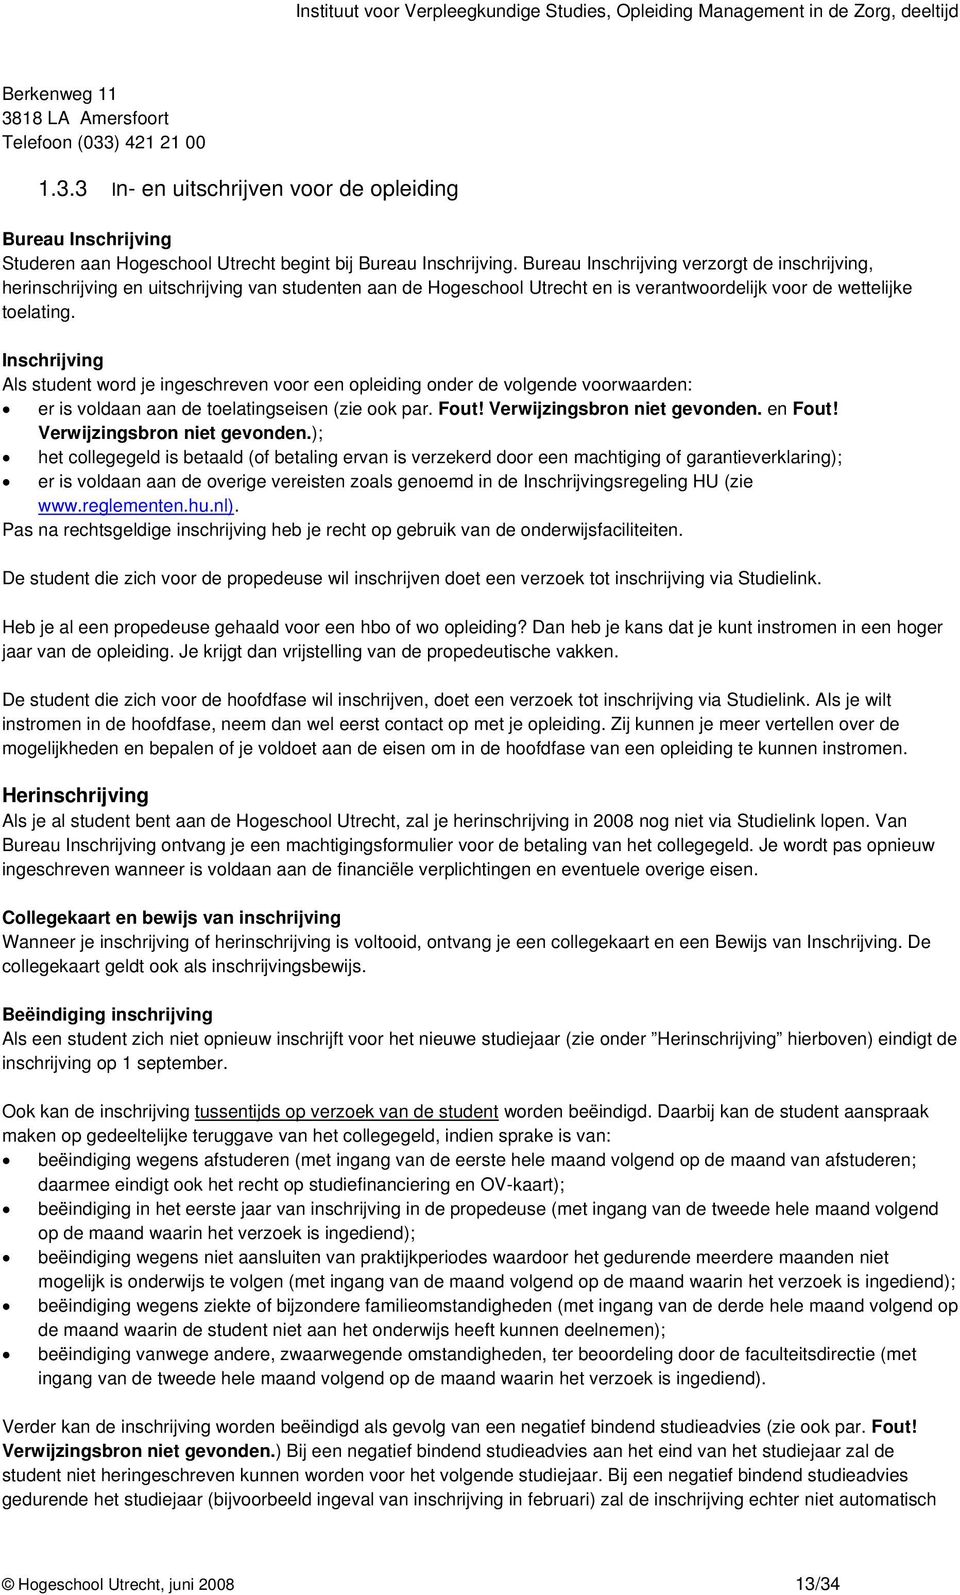 Bureau Inschrijving verzorgt de inschrijving, herinschrijving en uitschrijving van studenten aan de Hogeschool Utrecht en is verantwoordelijk voor de wettelijke toelating.